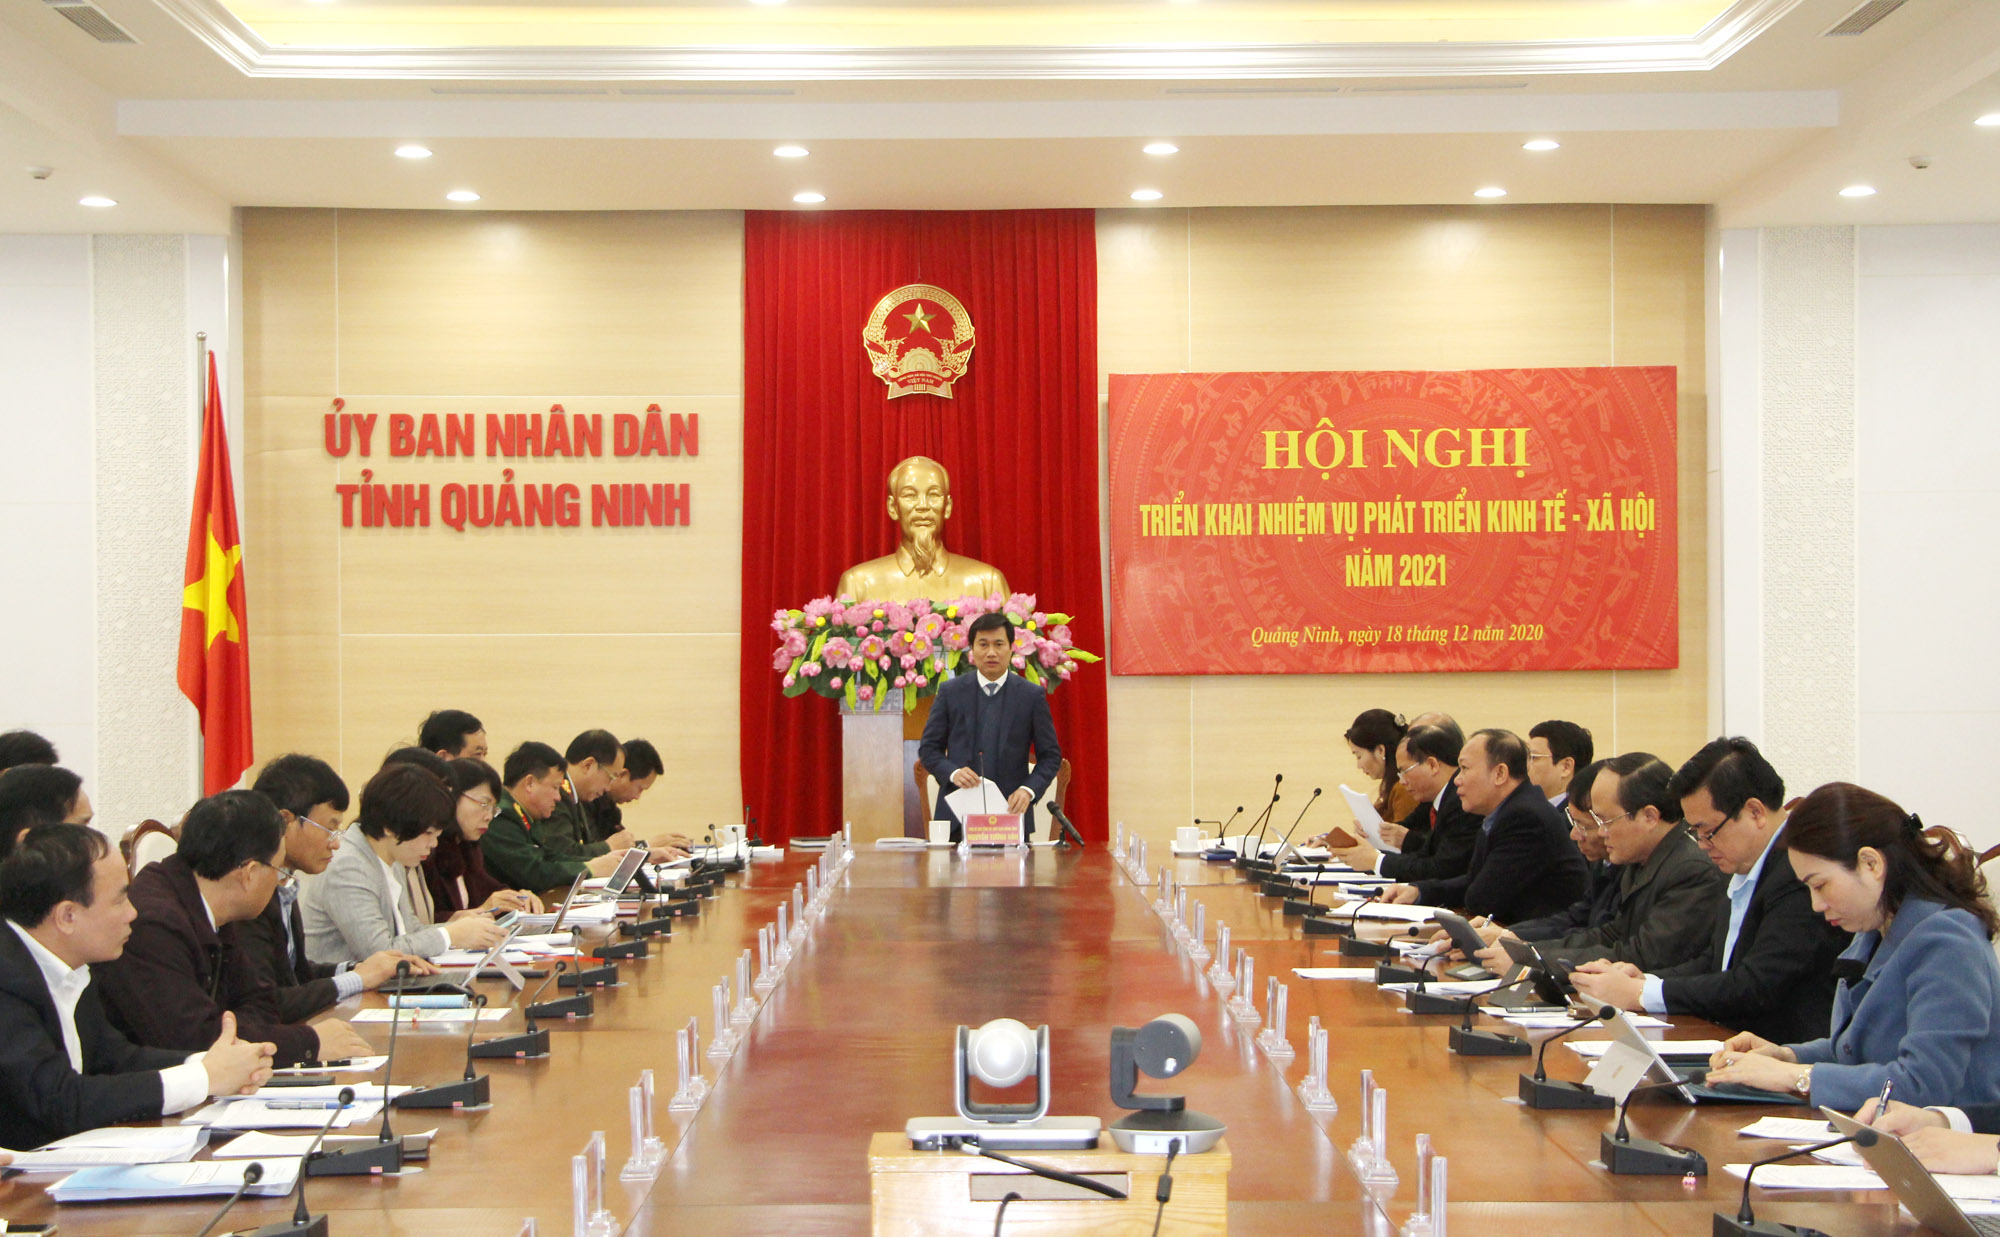 Đồng chí Nguyễn Tường Văn, Chủ tịch UBND tỉnh, kết luận hội nghị.